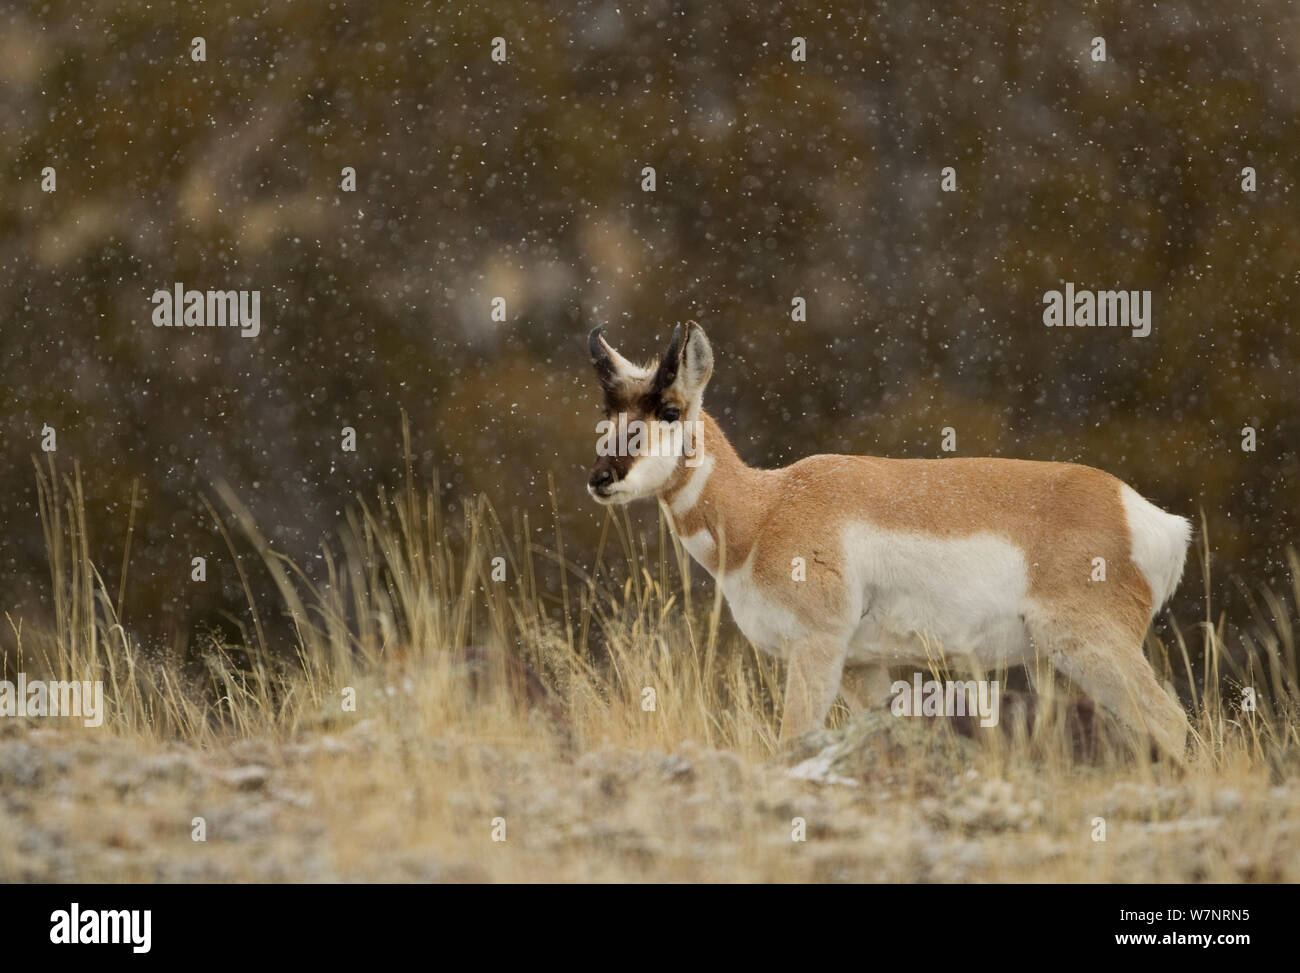 L'Antilope d'Amérique (Antilocapra americana) dans la neige. Yellowstone, USA, février. Banque D'Images